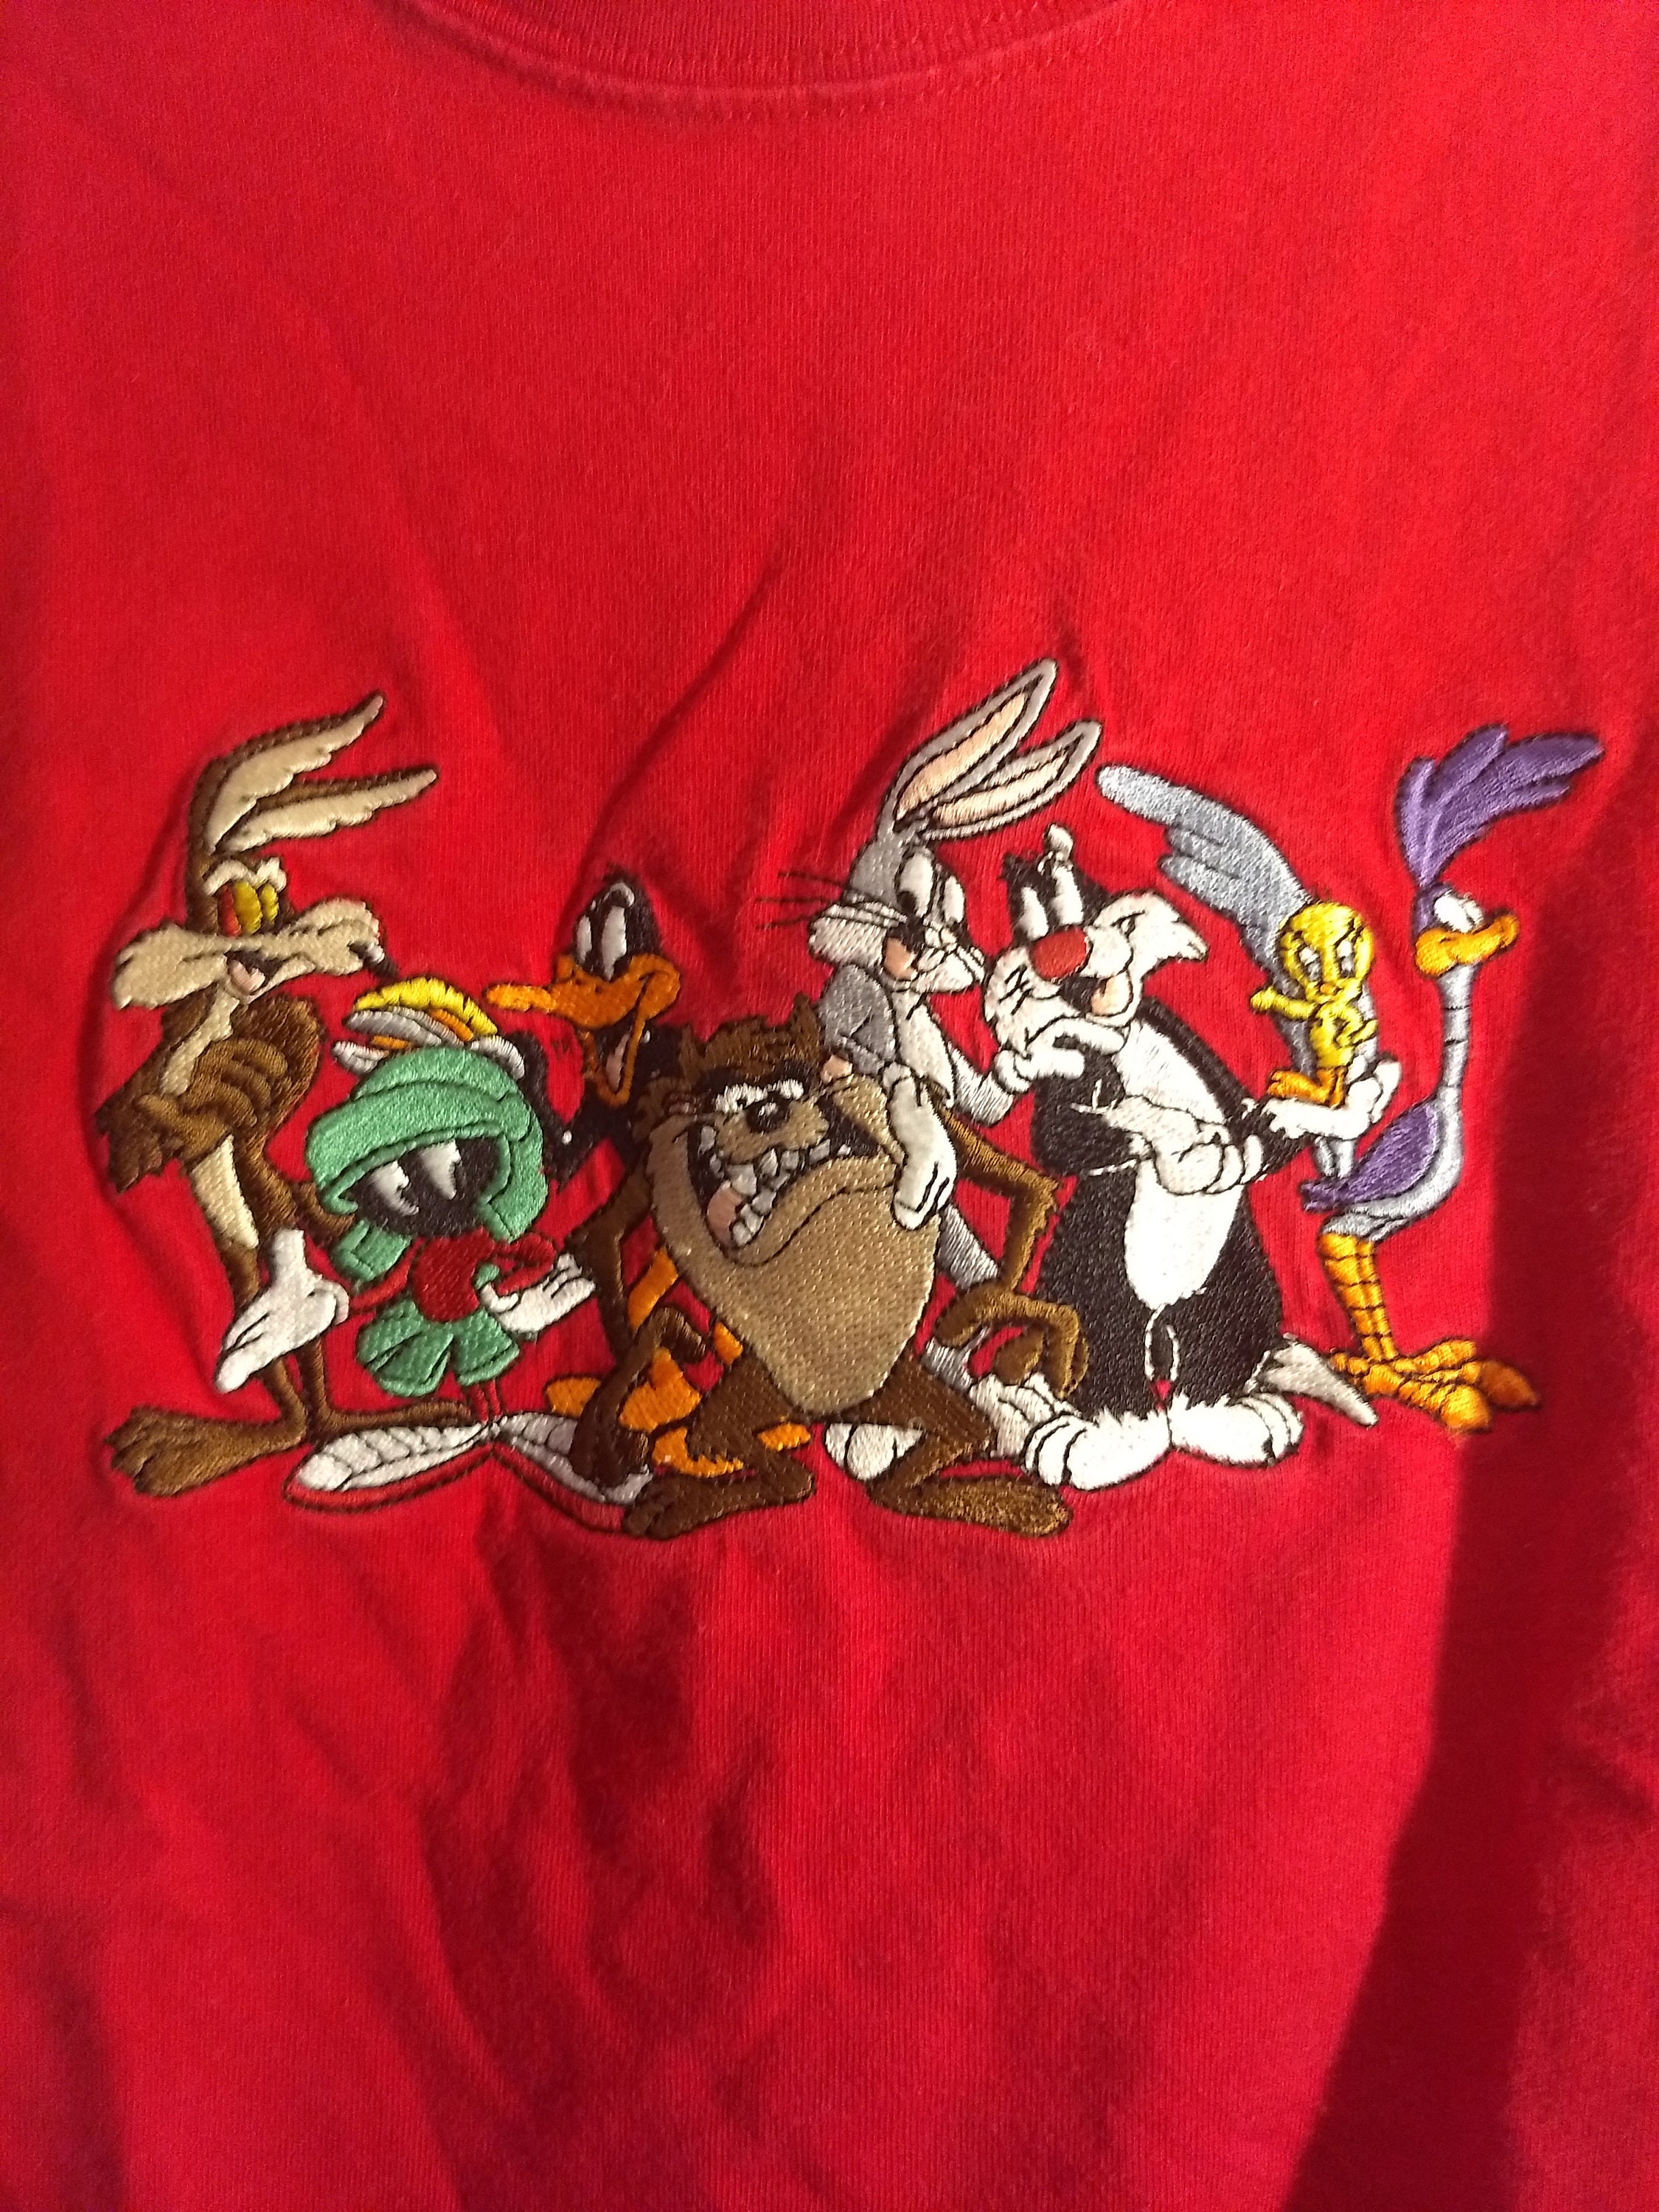 Bugs Bunny Will E. Sylvester Road Runner! Taz Daffy Auténtica vendimia 1999 Marvin bordado camiseta para niños Tweety Ropa Ropa unisex para niños Tops y camisetas Camisetas Camisetas estampadas Looney Tunes 